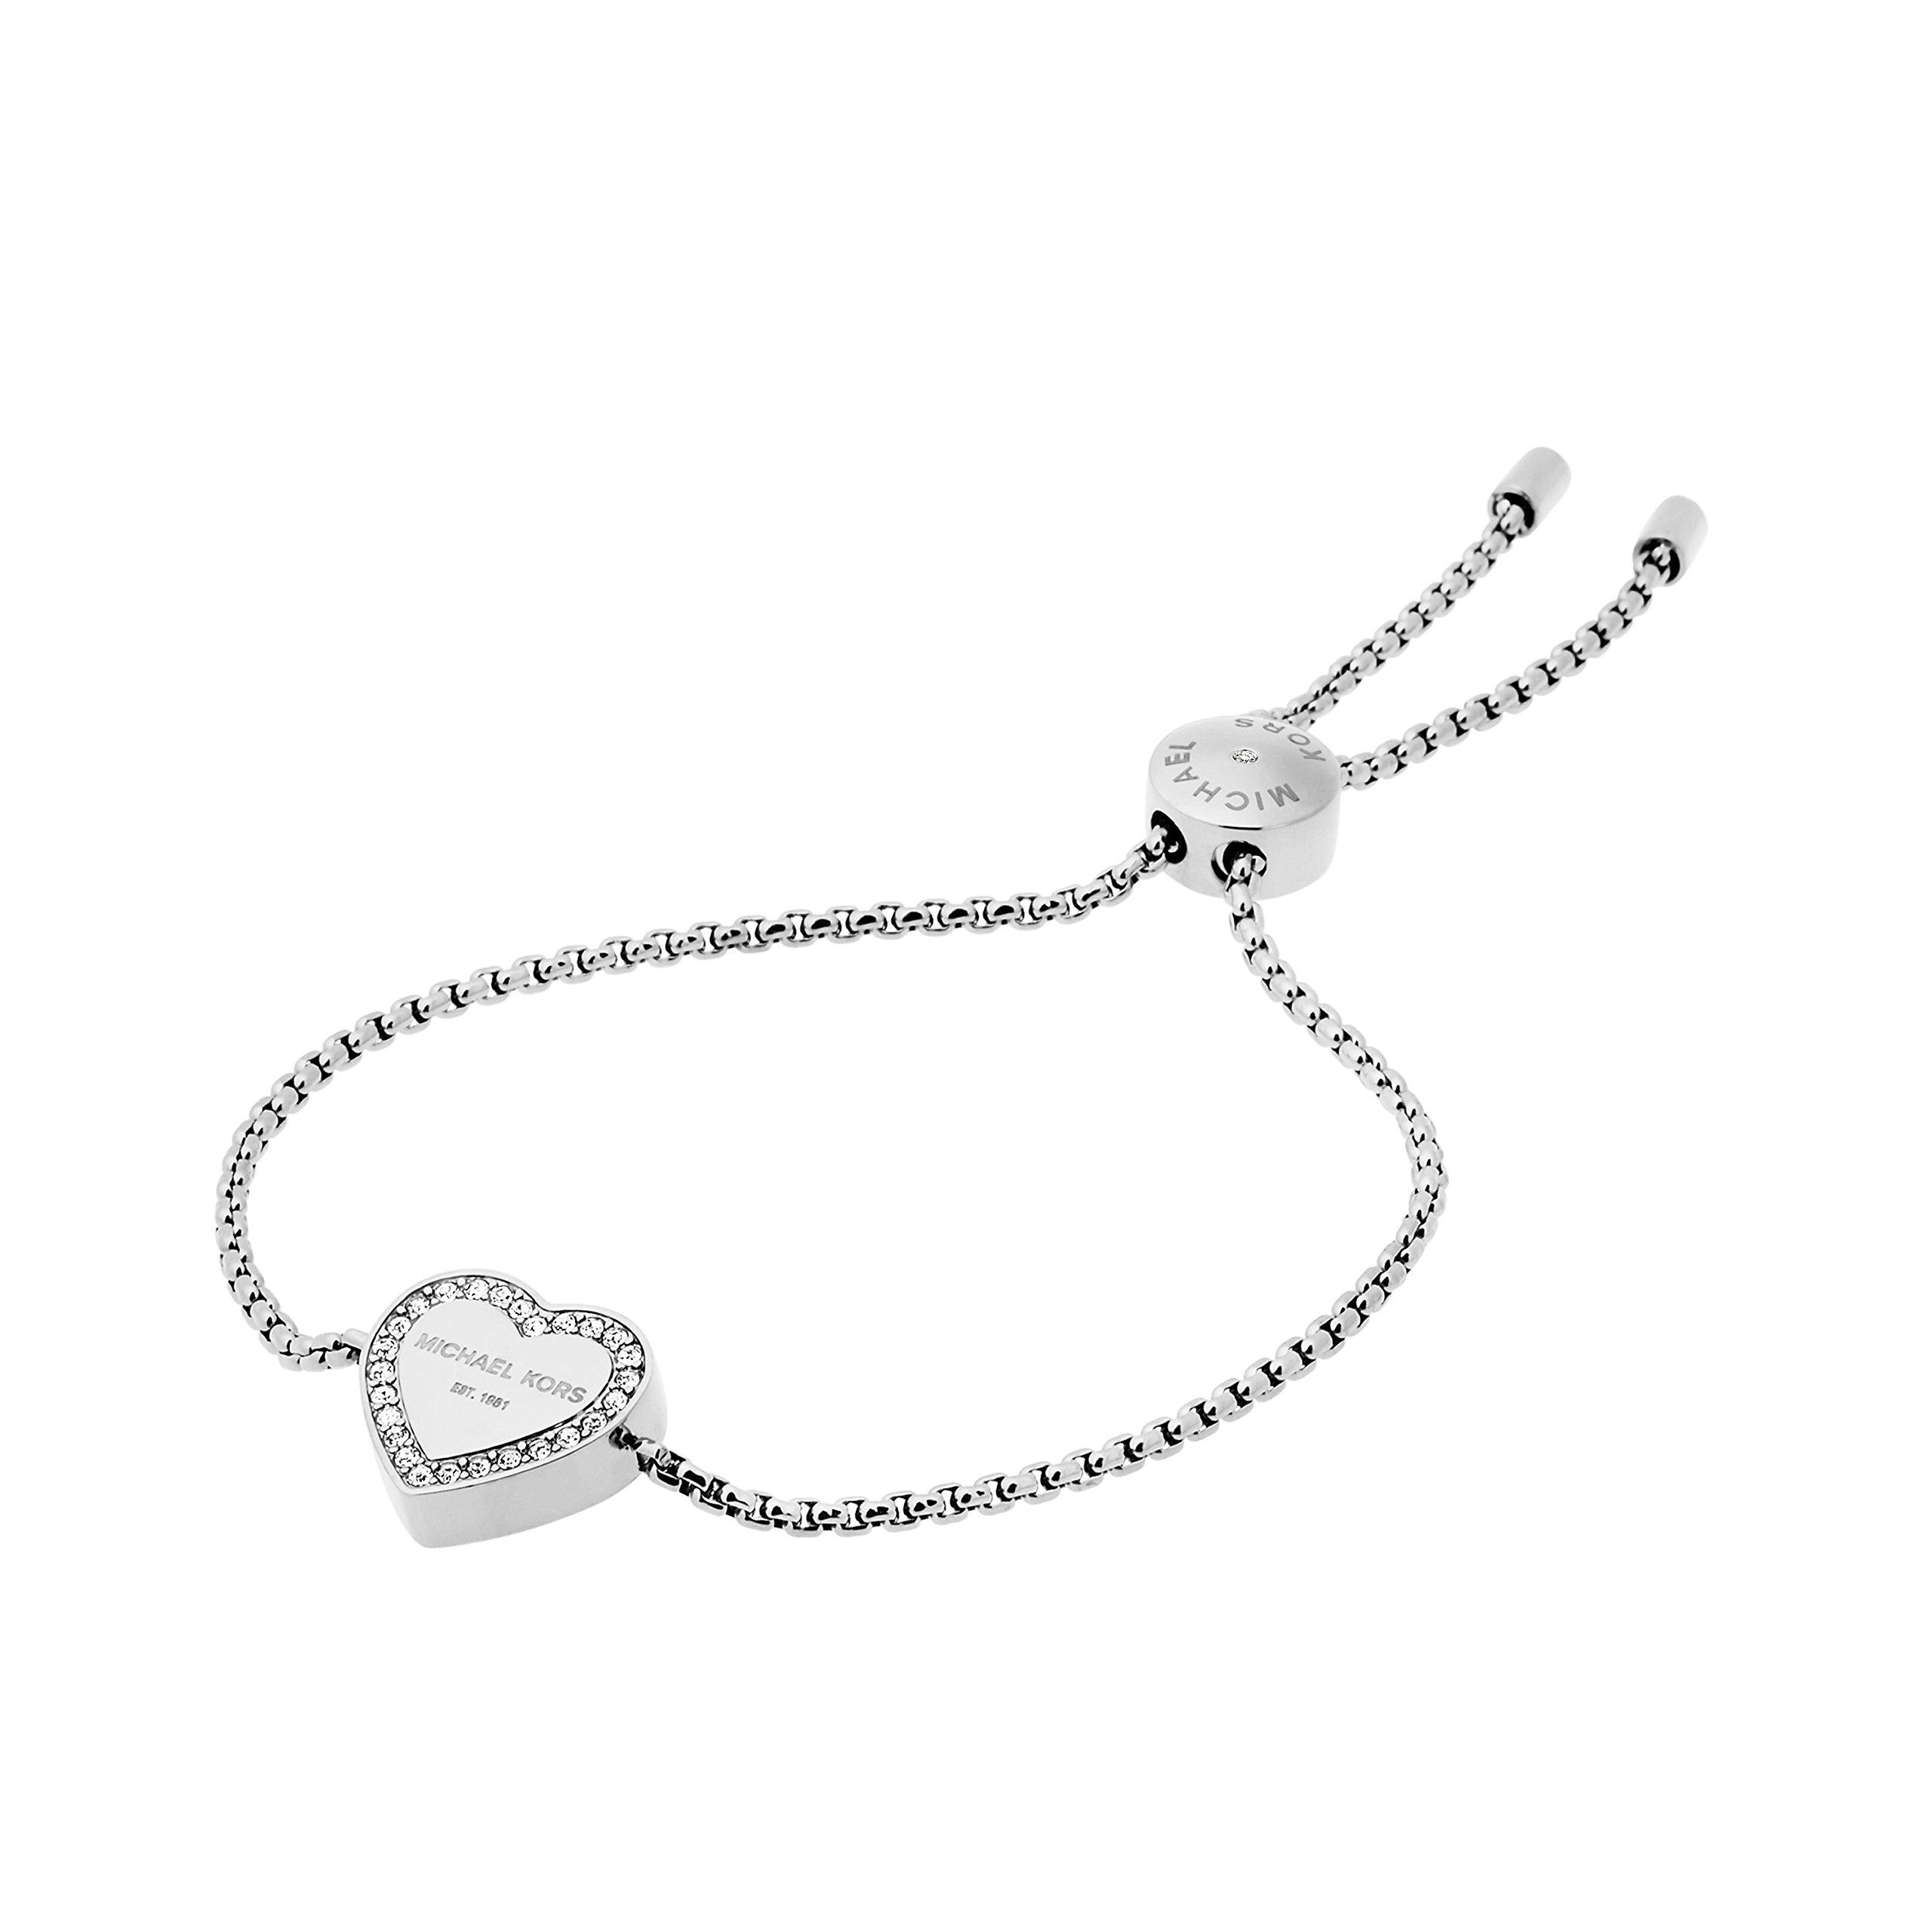 Michael Kors S Heritage Heart Adjustable Bracelet in Metallic